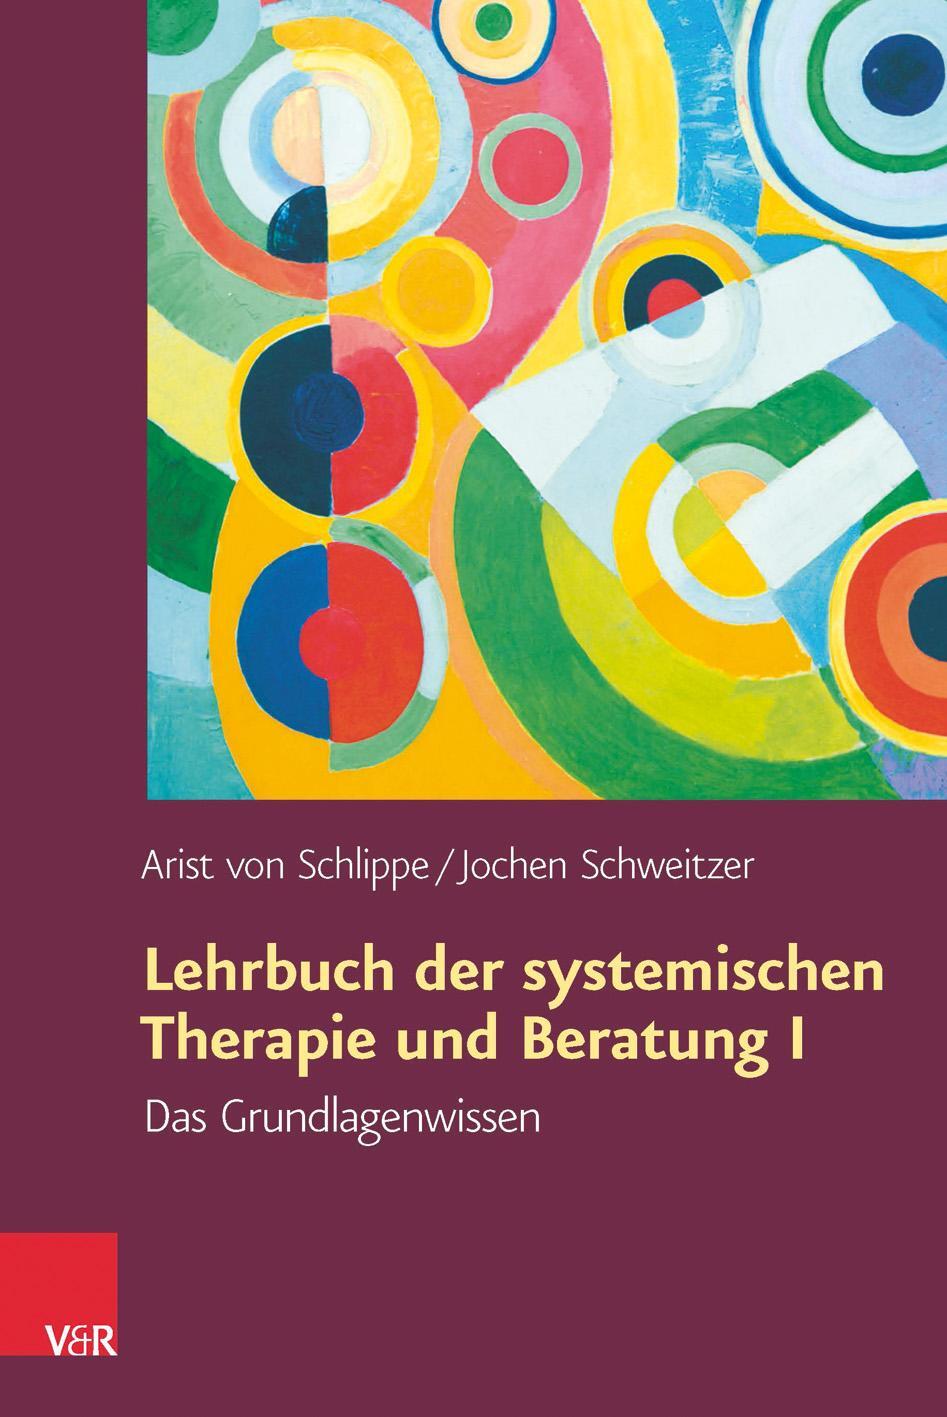 Lehrbuch der systemischen Therapie und Beratung 1 - Schlippe, Arist von